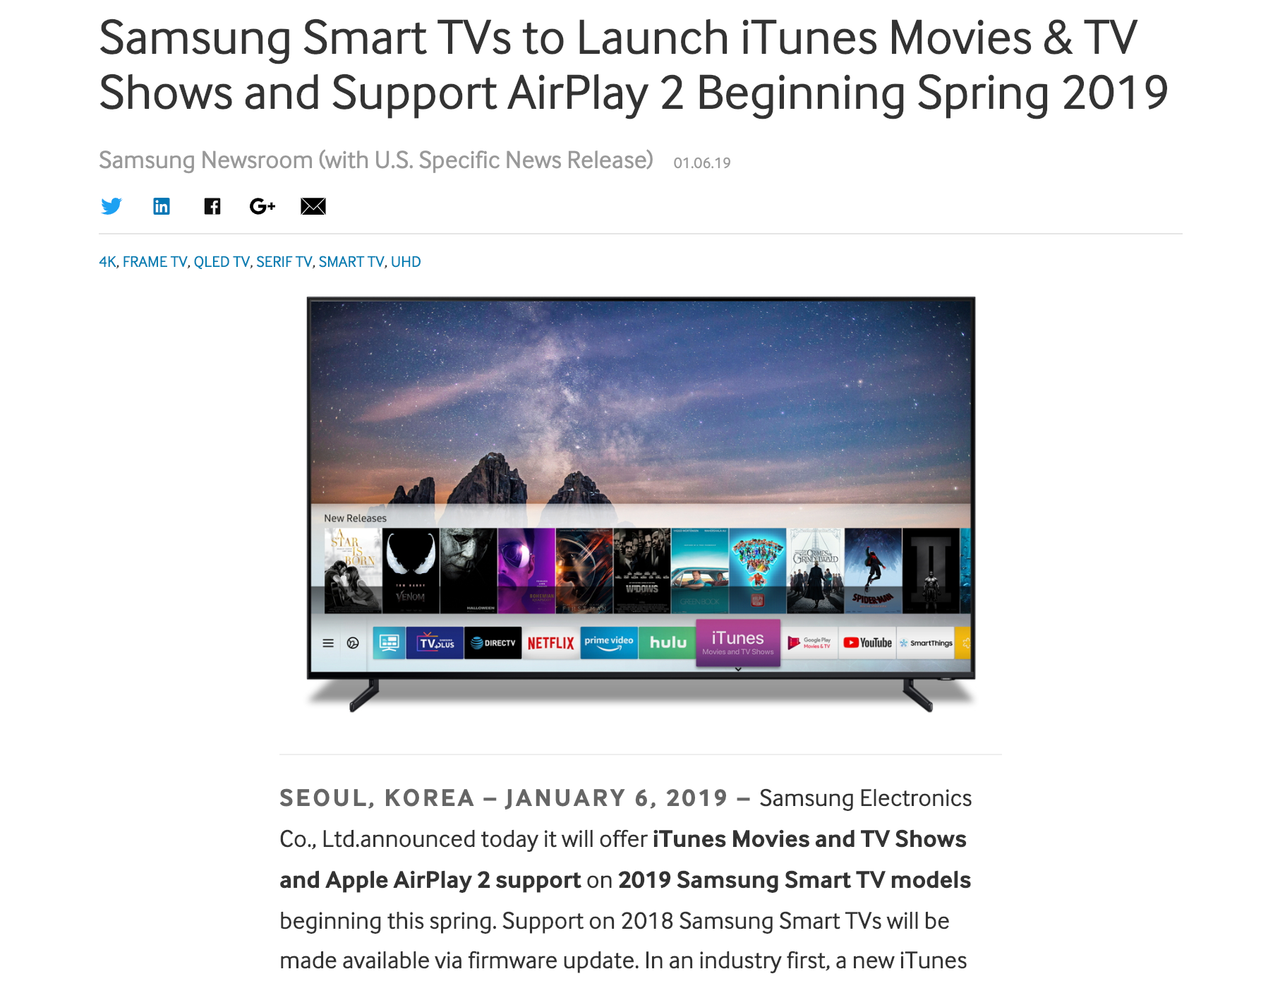 Samsung Electronicsがが行った同社のテレビ製品についての発表。